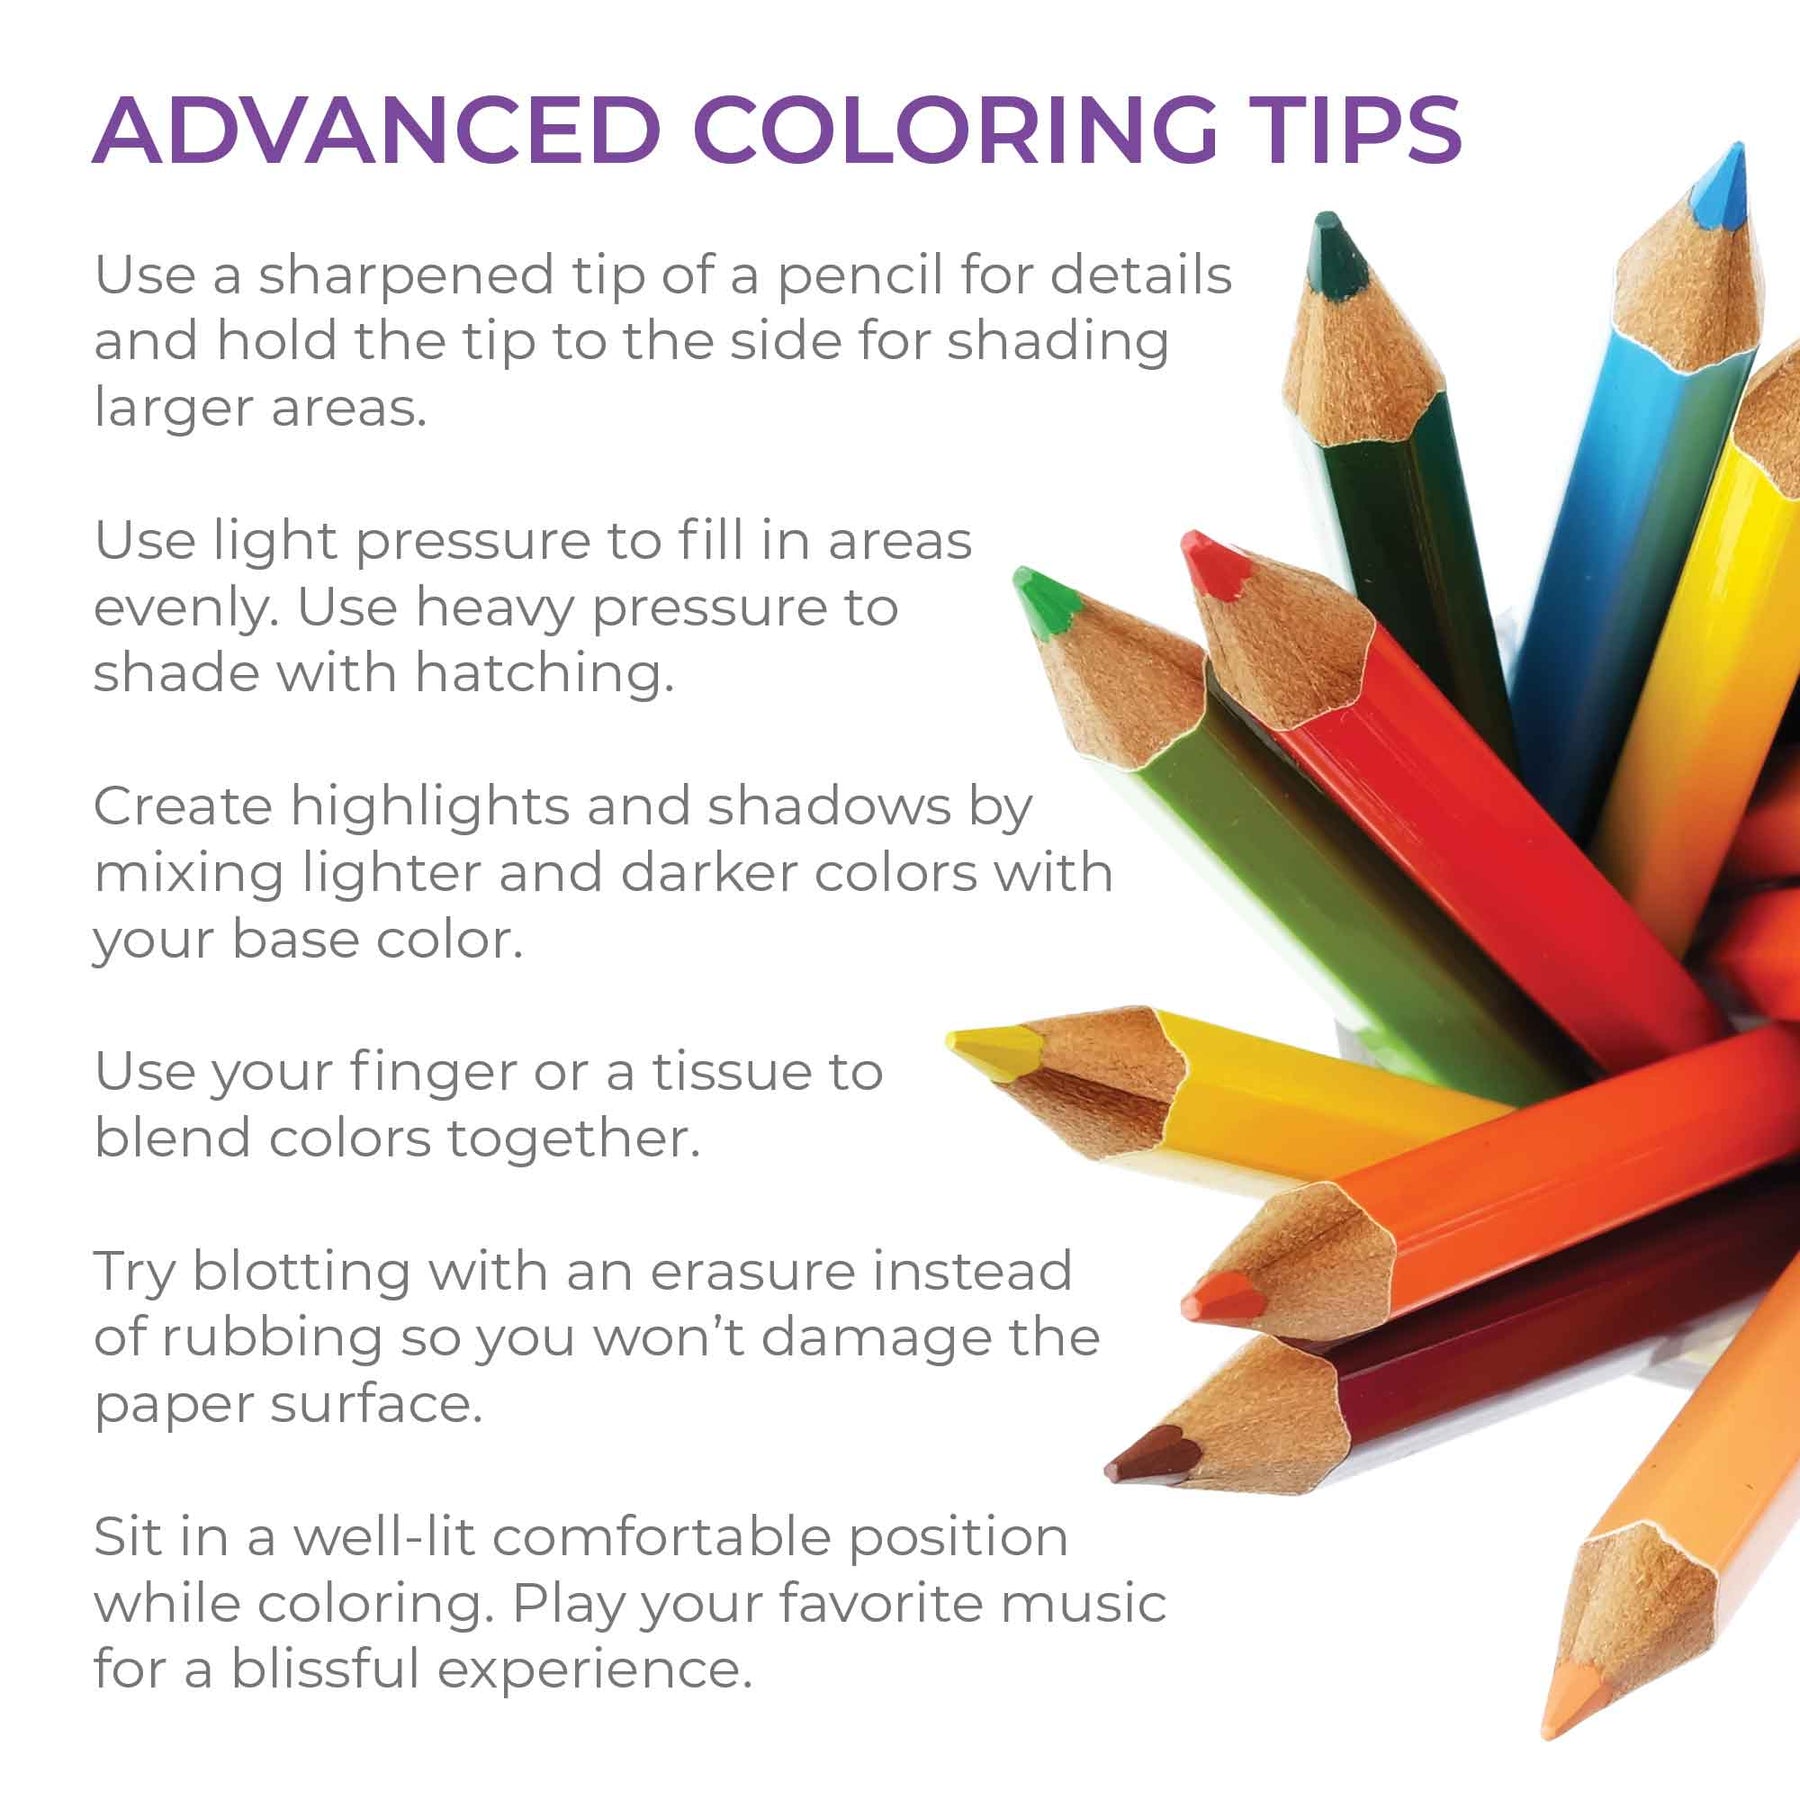 Dr Shnitzel Color Changing Pencils (Set of 5 colors)